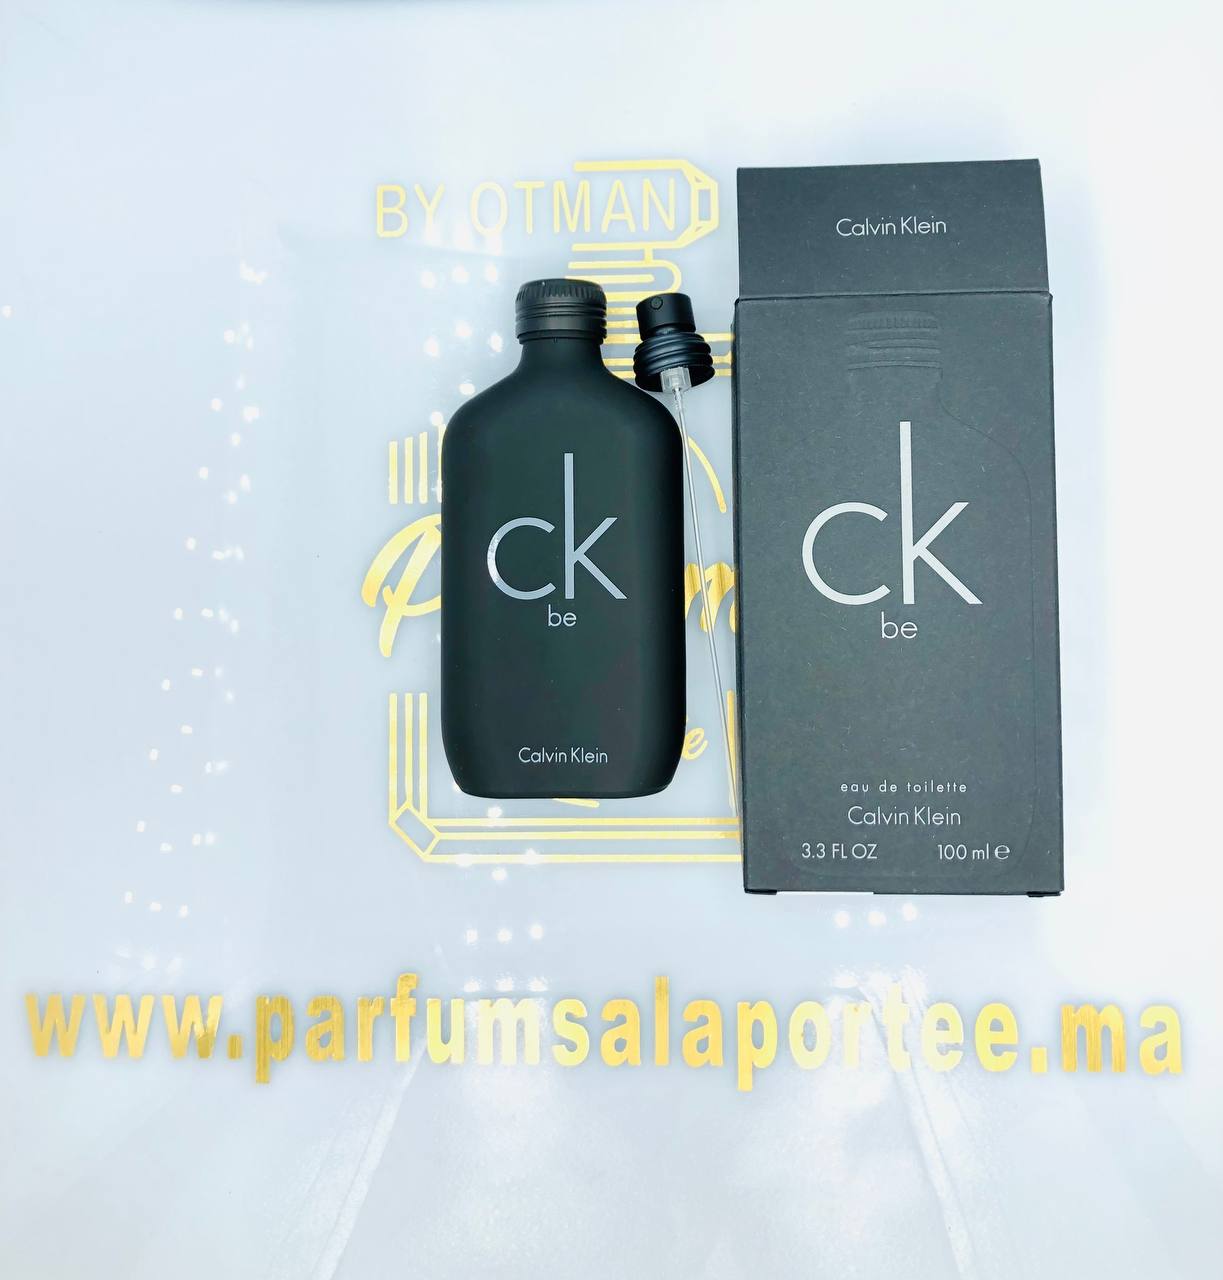 CK be Calvin Klein pour homme et femme - parfumsalaportee